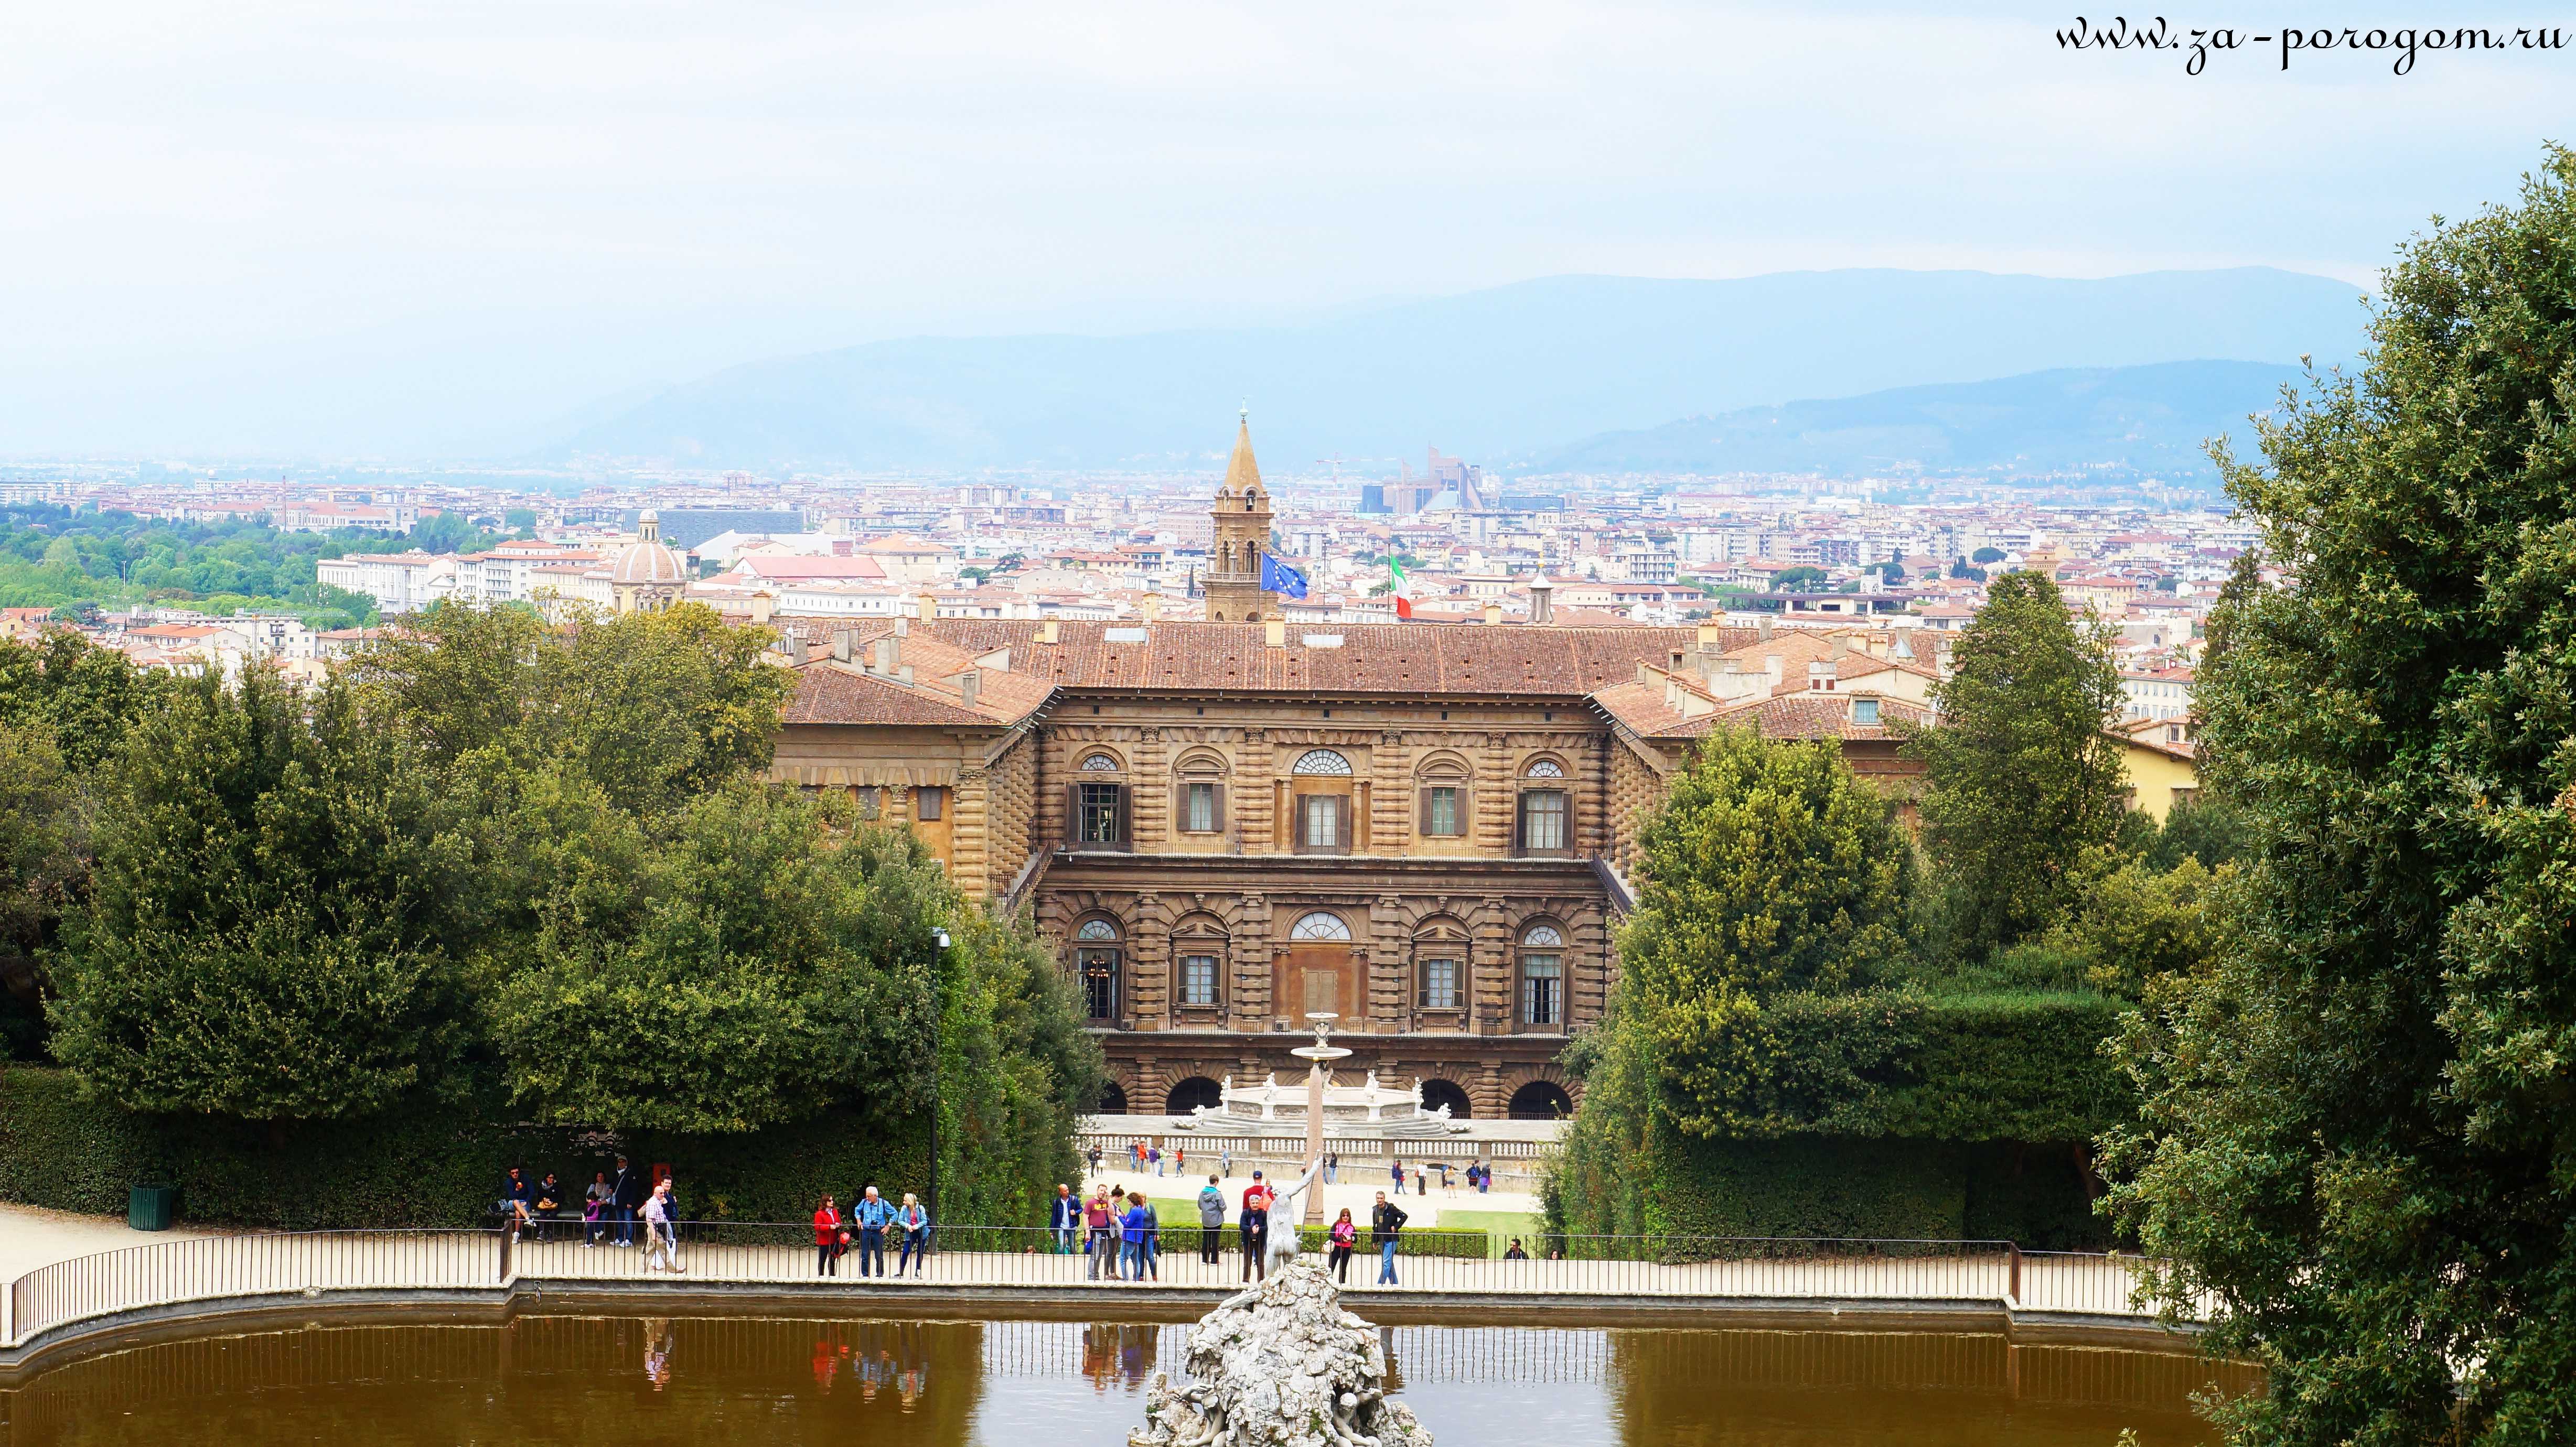 Посещение галереи уффици во флоренции: 12 главных достопримечательностей, советов и туров